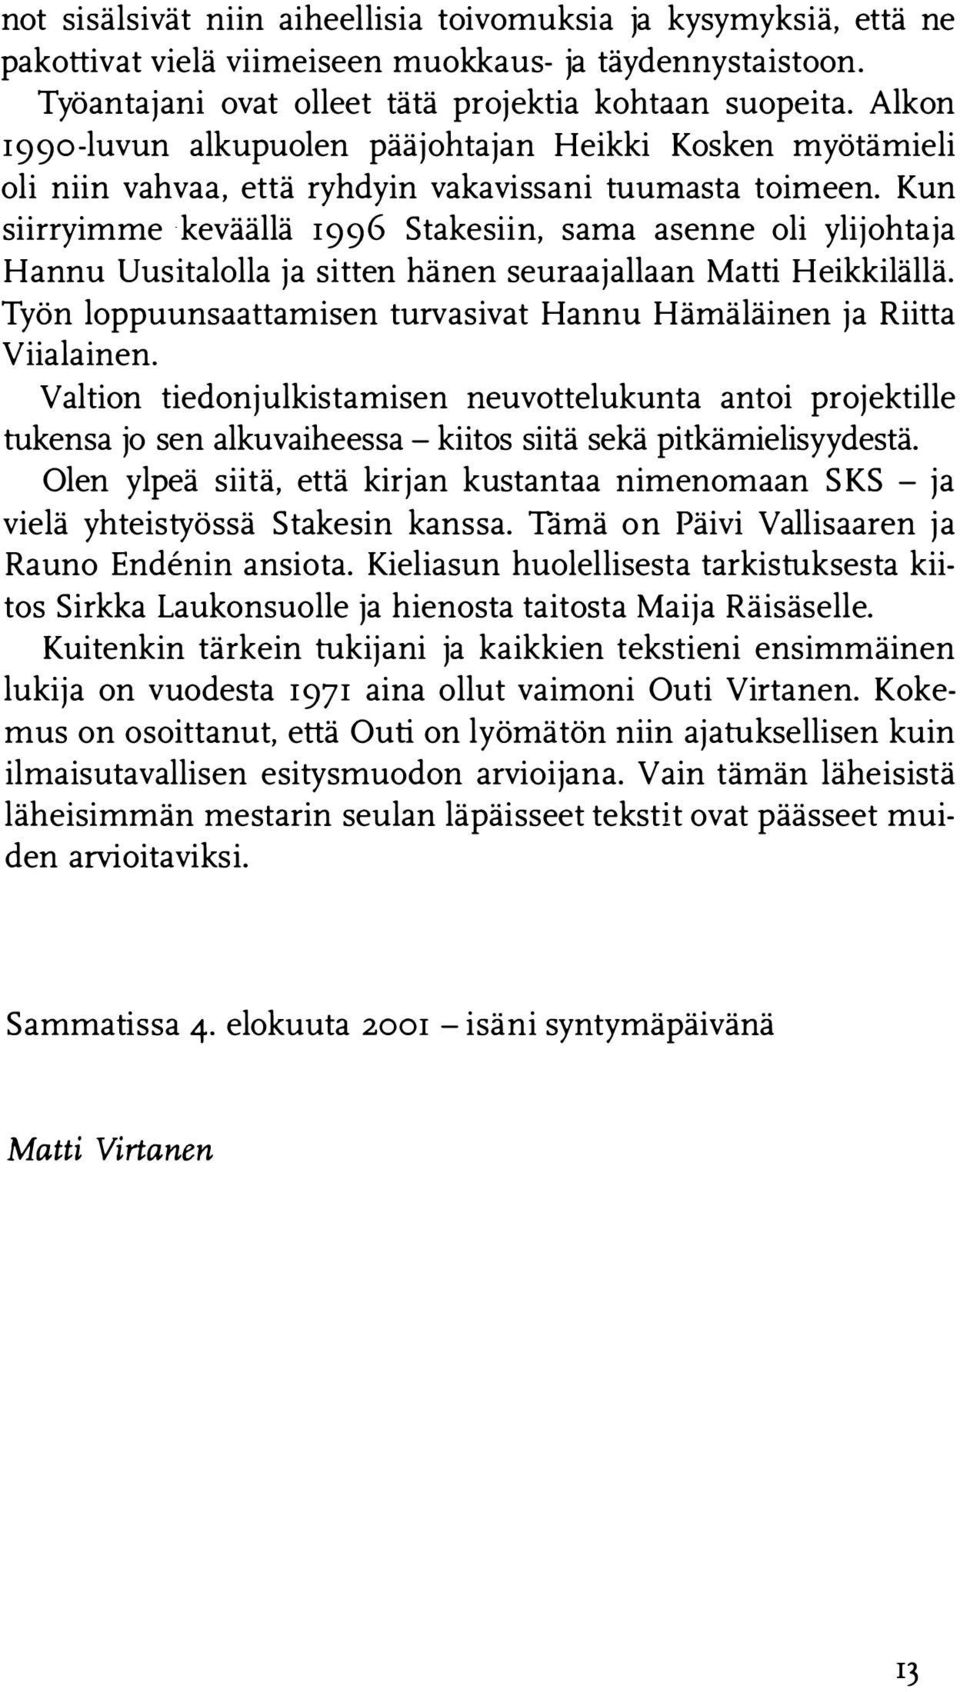 Kun siirryimme keväällä 1996 Stakesiin, sama asenne oli ylijohtaja Hannu Uusitalolla ja sitten hänen seuraajallaan Matti Heikkilällä.